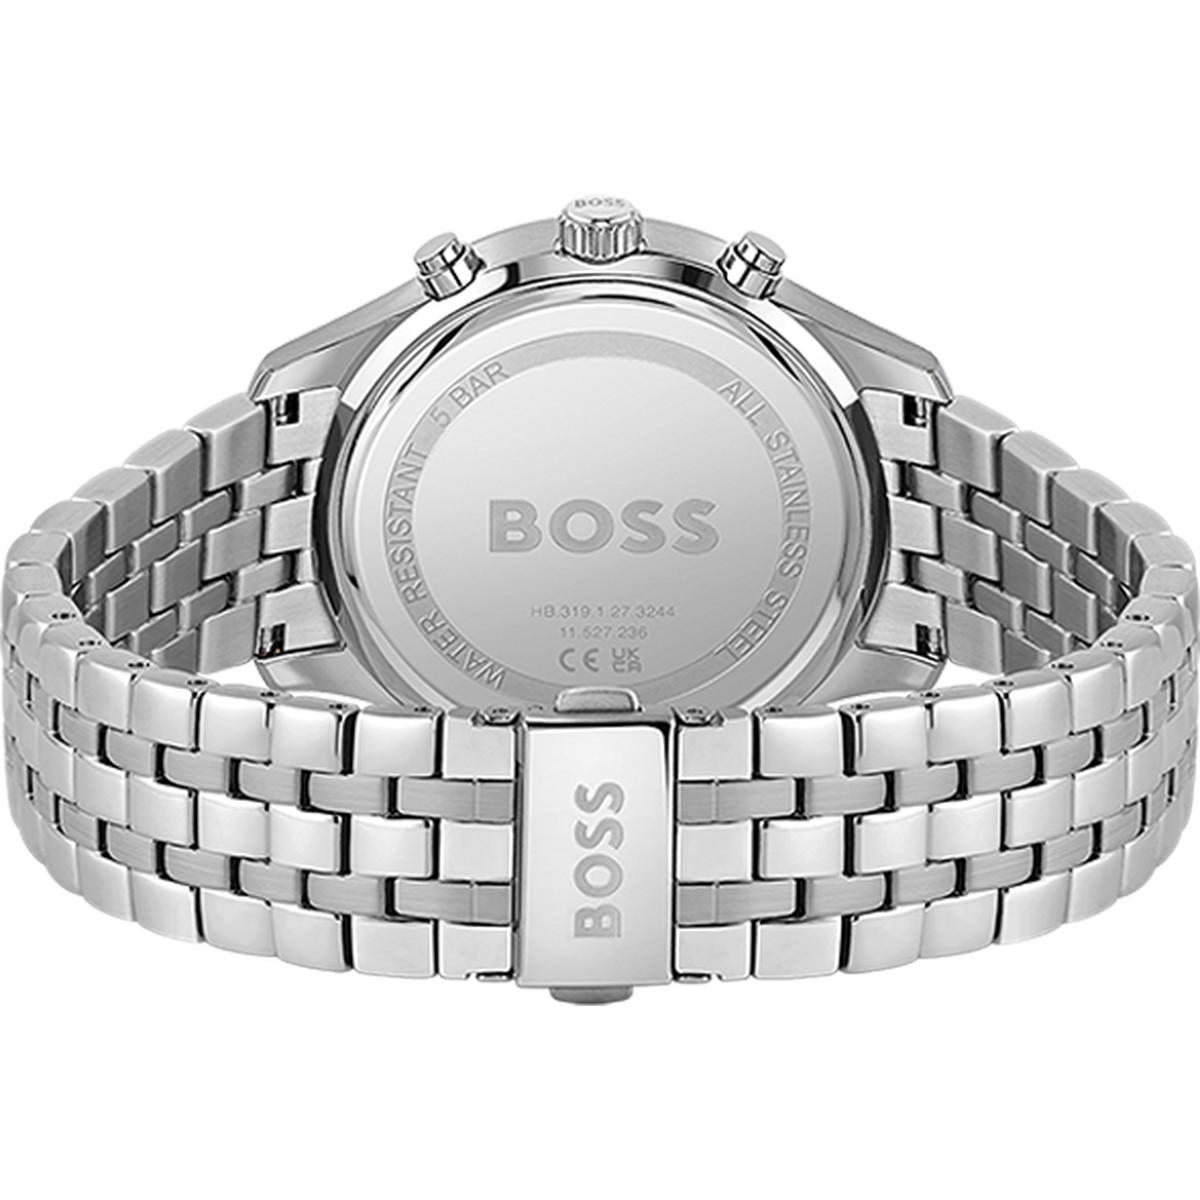 Montre BOSS Associate homme bracelet acier - vue 3